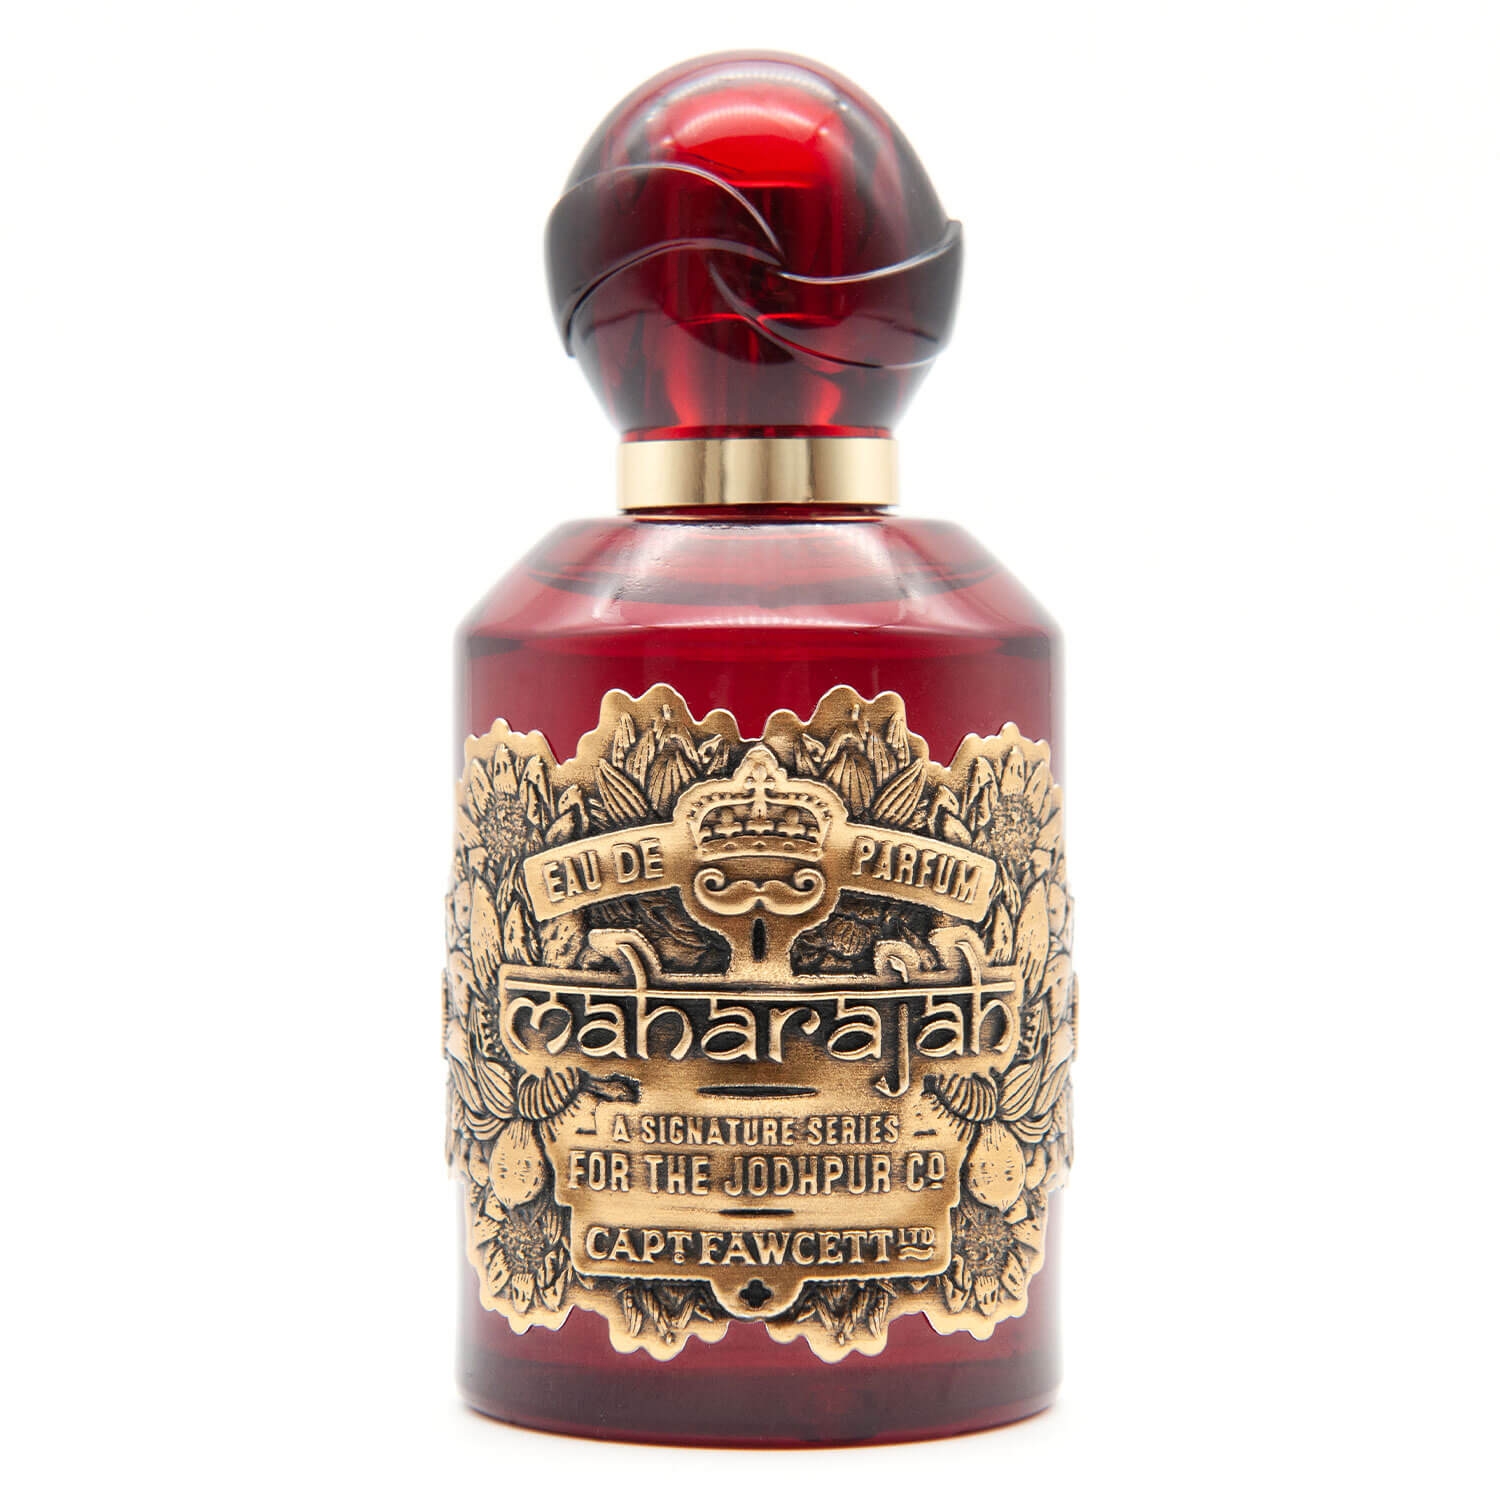 Produktbild von Capt. Fawcett Care - Maharajah Eau de Parfum